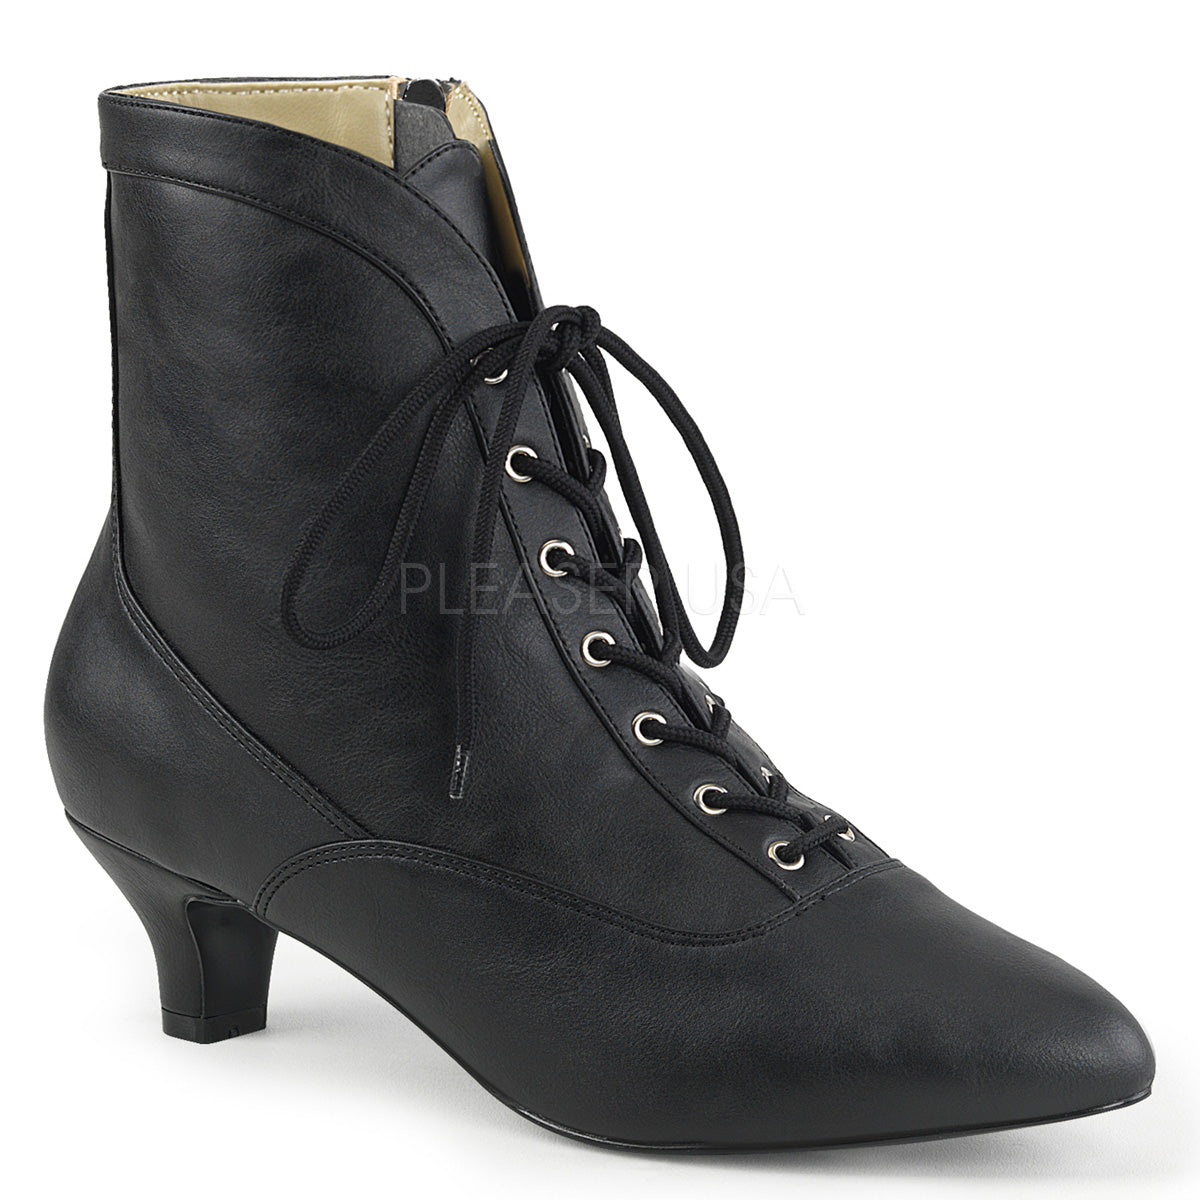 black boots 2 inch heel